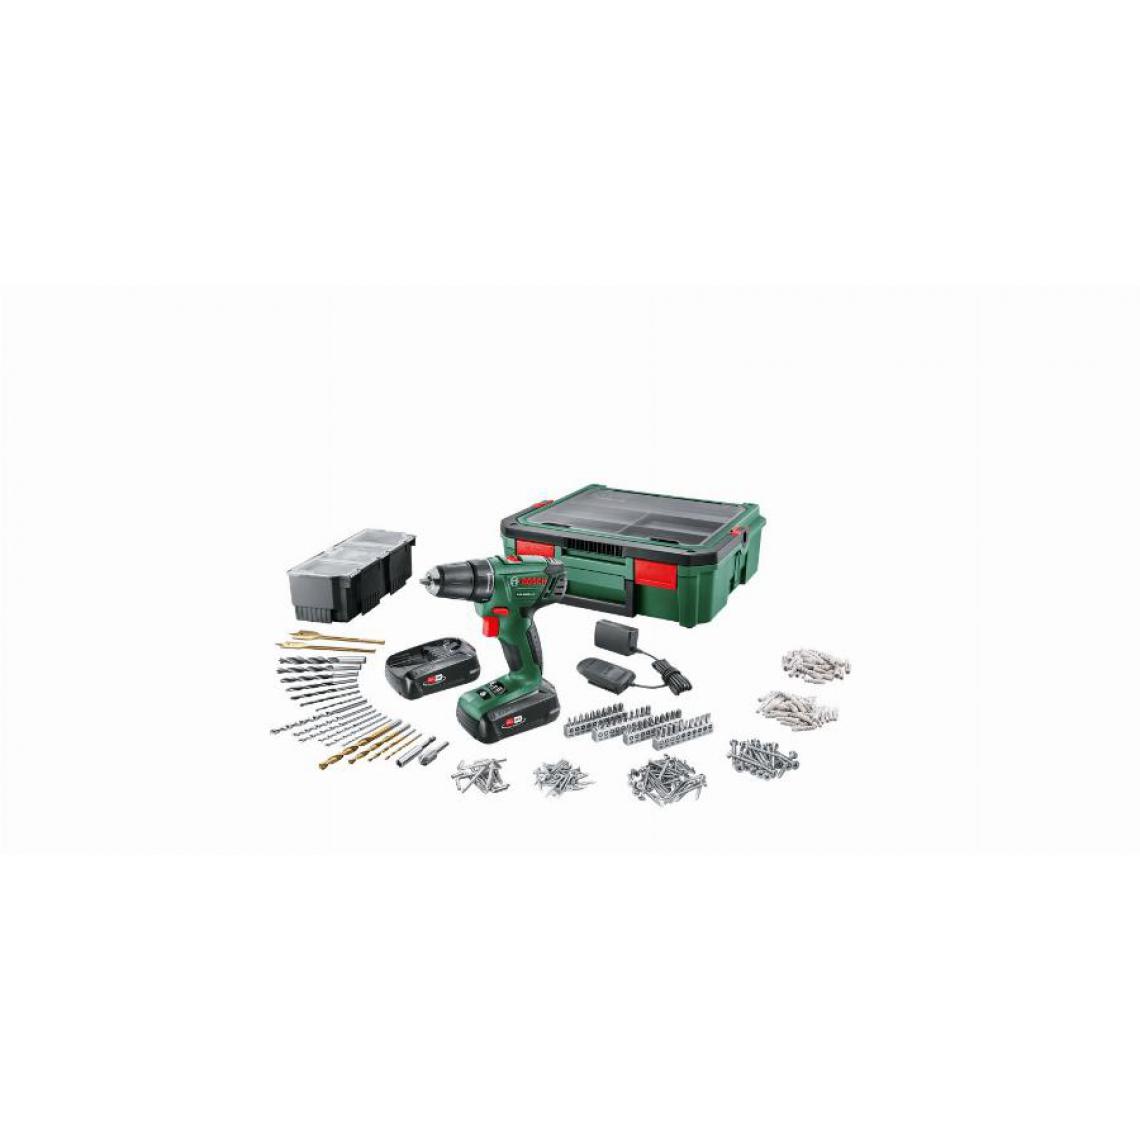 Bosch - Perceuse sans-fil PSR 1800 LI-2 BOSCH + 2 batteries 1,5Ah + System box + 241 accessoires - 06039A310S - Perceuses, visseuses sans fil